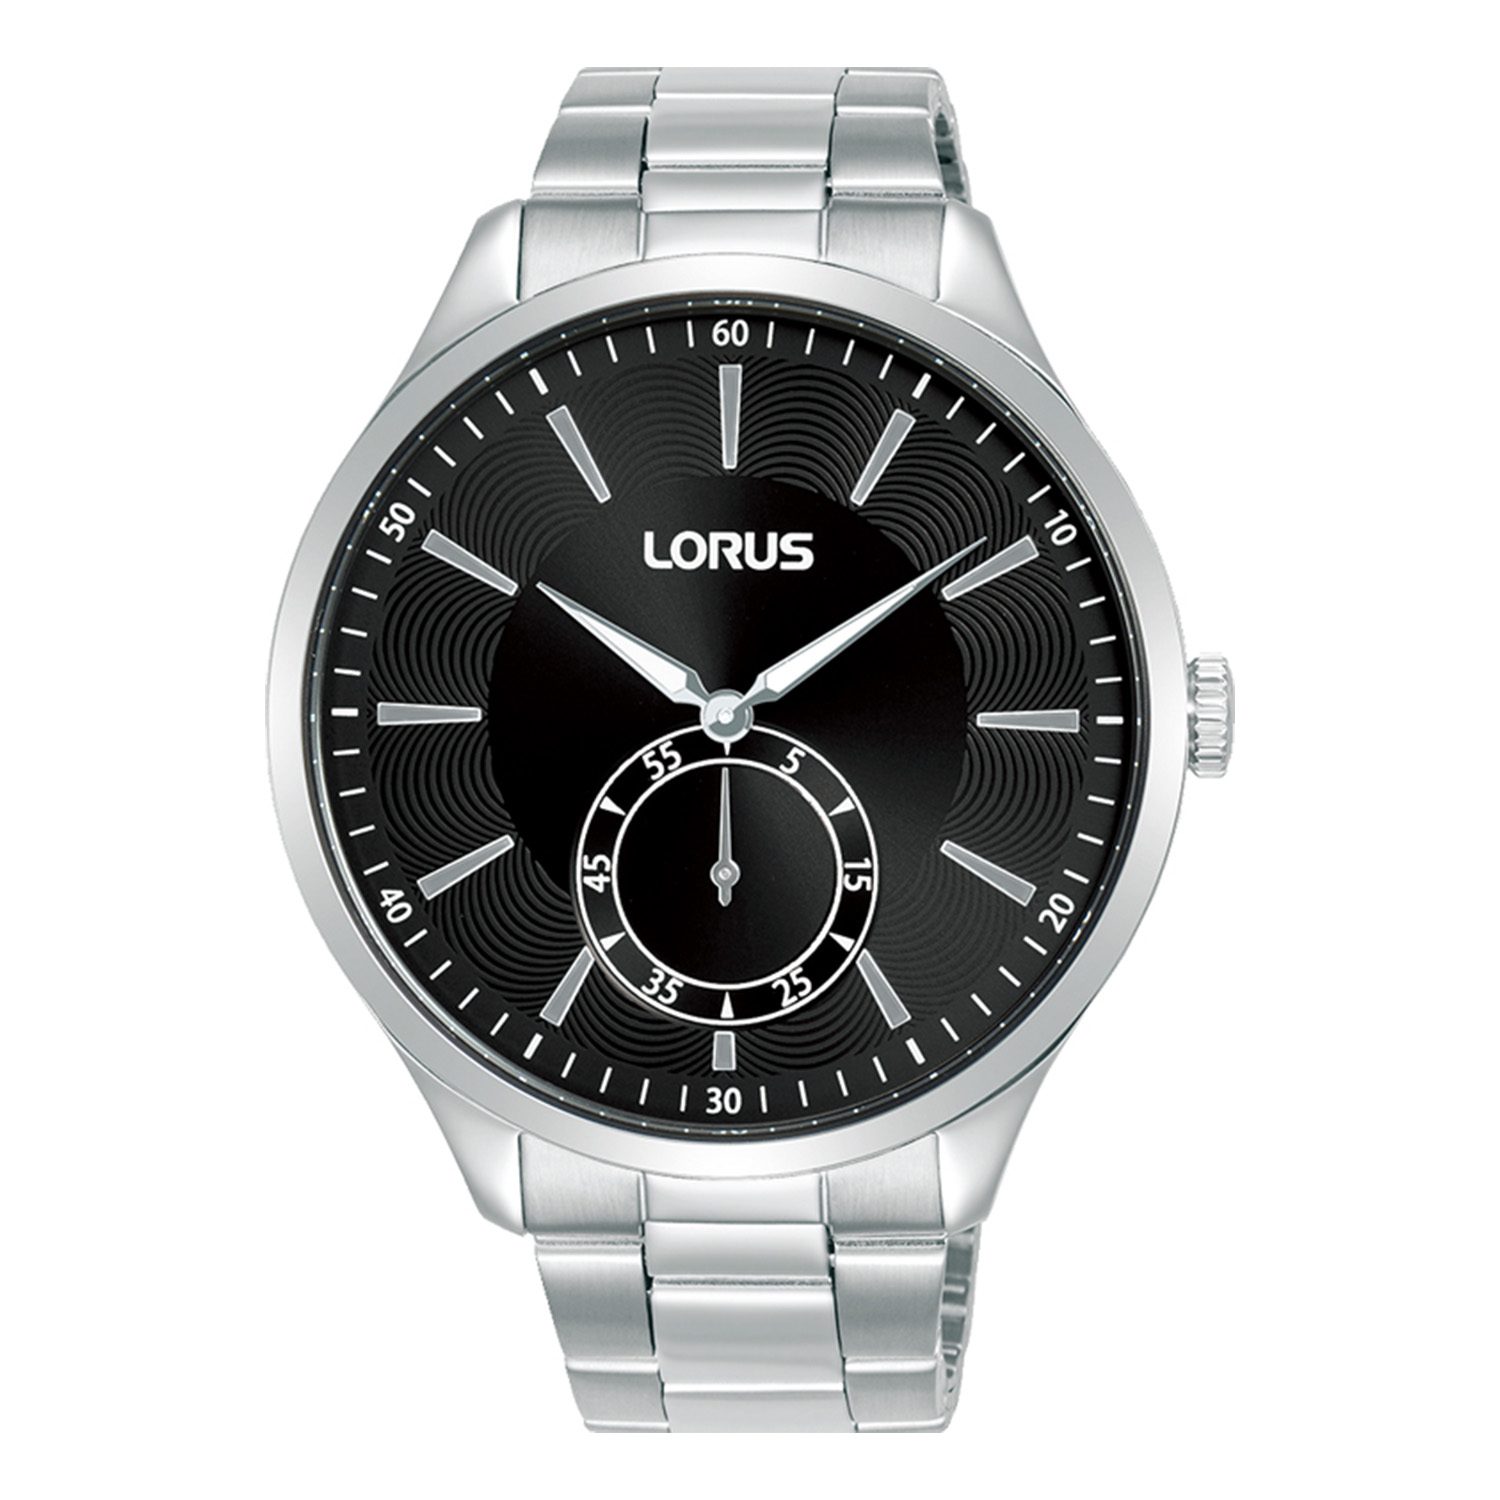 Ανδρικό ρολόι LORUS από ανοξείδωτο ατσάλι με μαύρο καντράν και ασημί μπρασελέ.